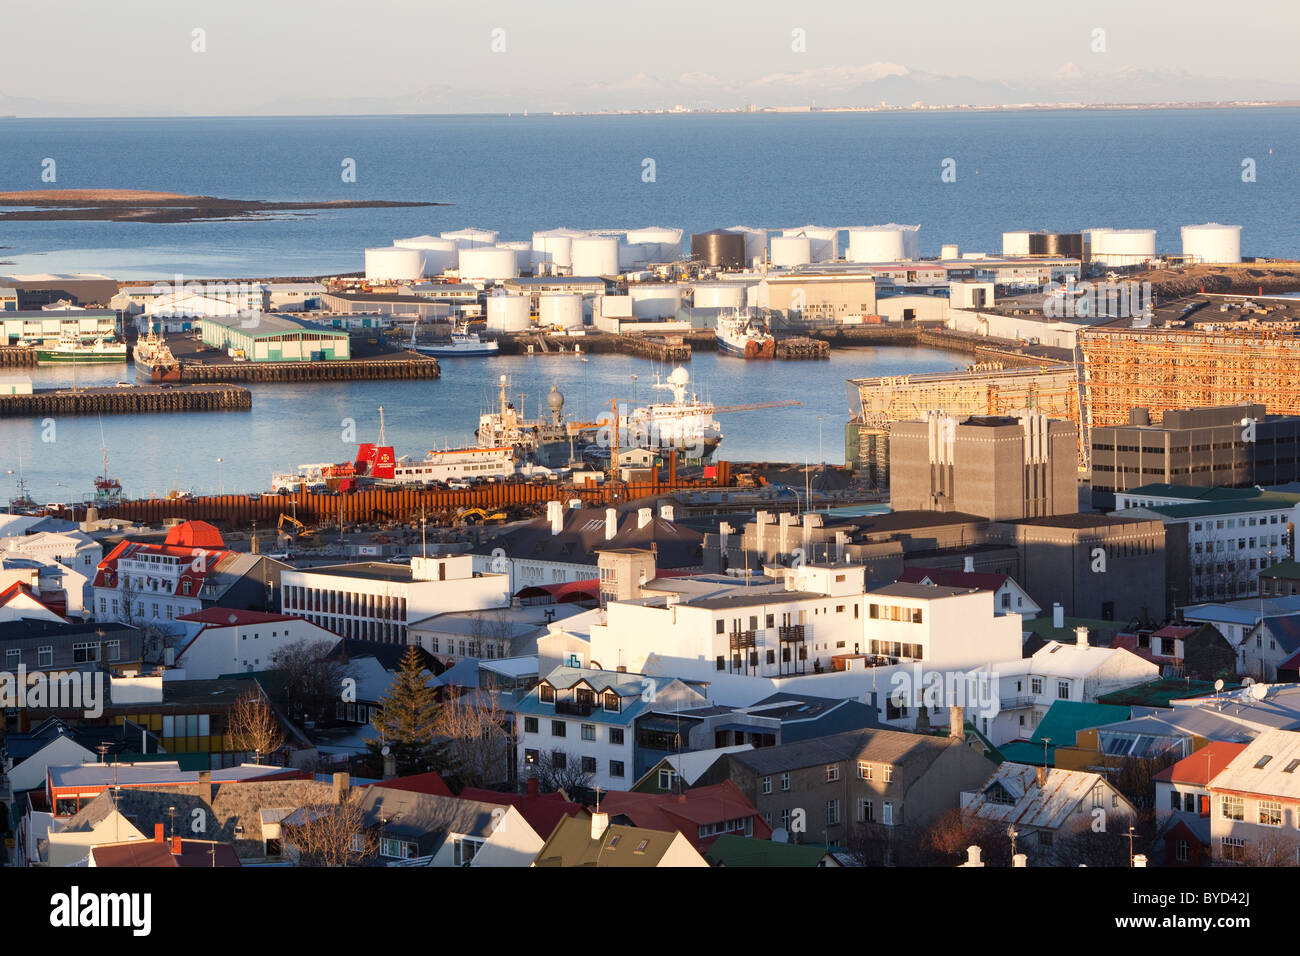 Eine Übersicht der Innenstadt von Reykjavik, Island, und seinen Hafen.  In der Ferne sehen Sie die Stadt Akranes. Stockfoto